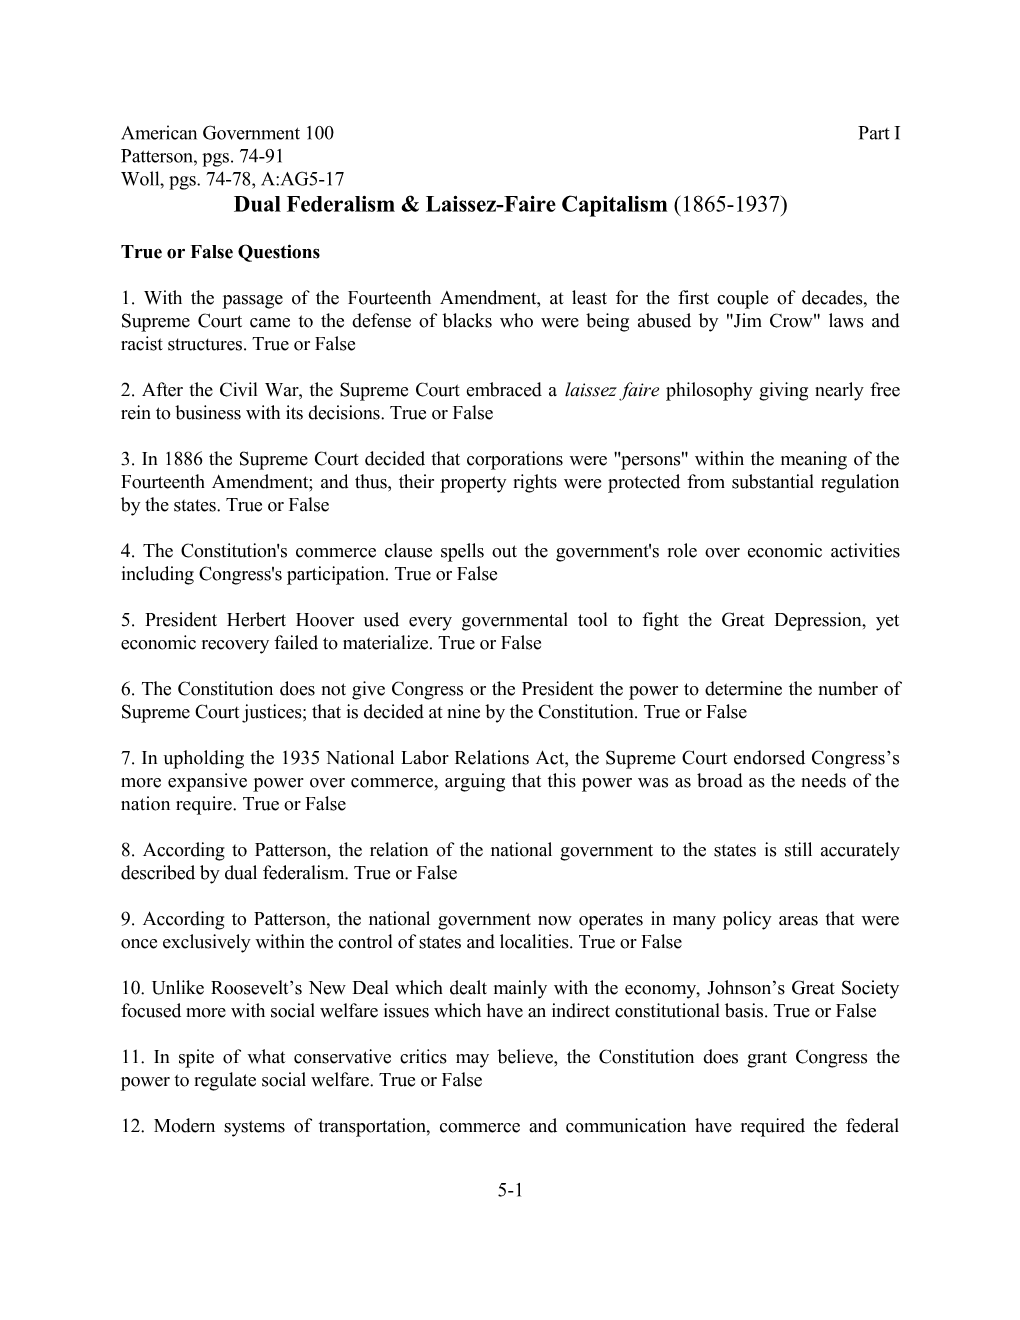 Dual Federalism & Laissez-Faire Capitalism (1865-1937)